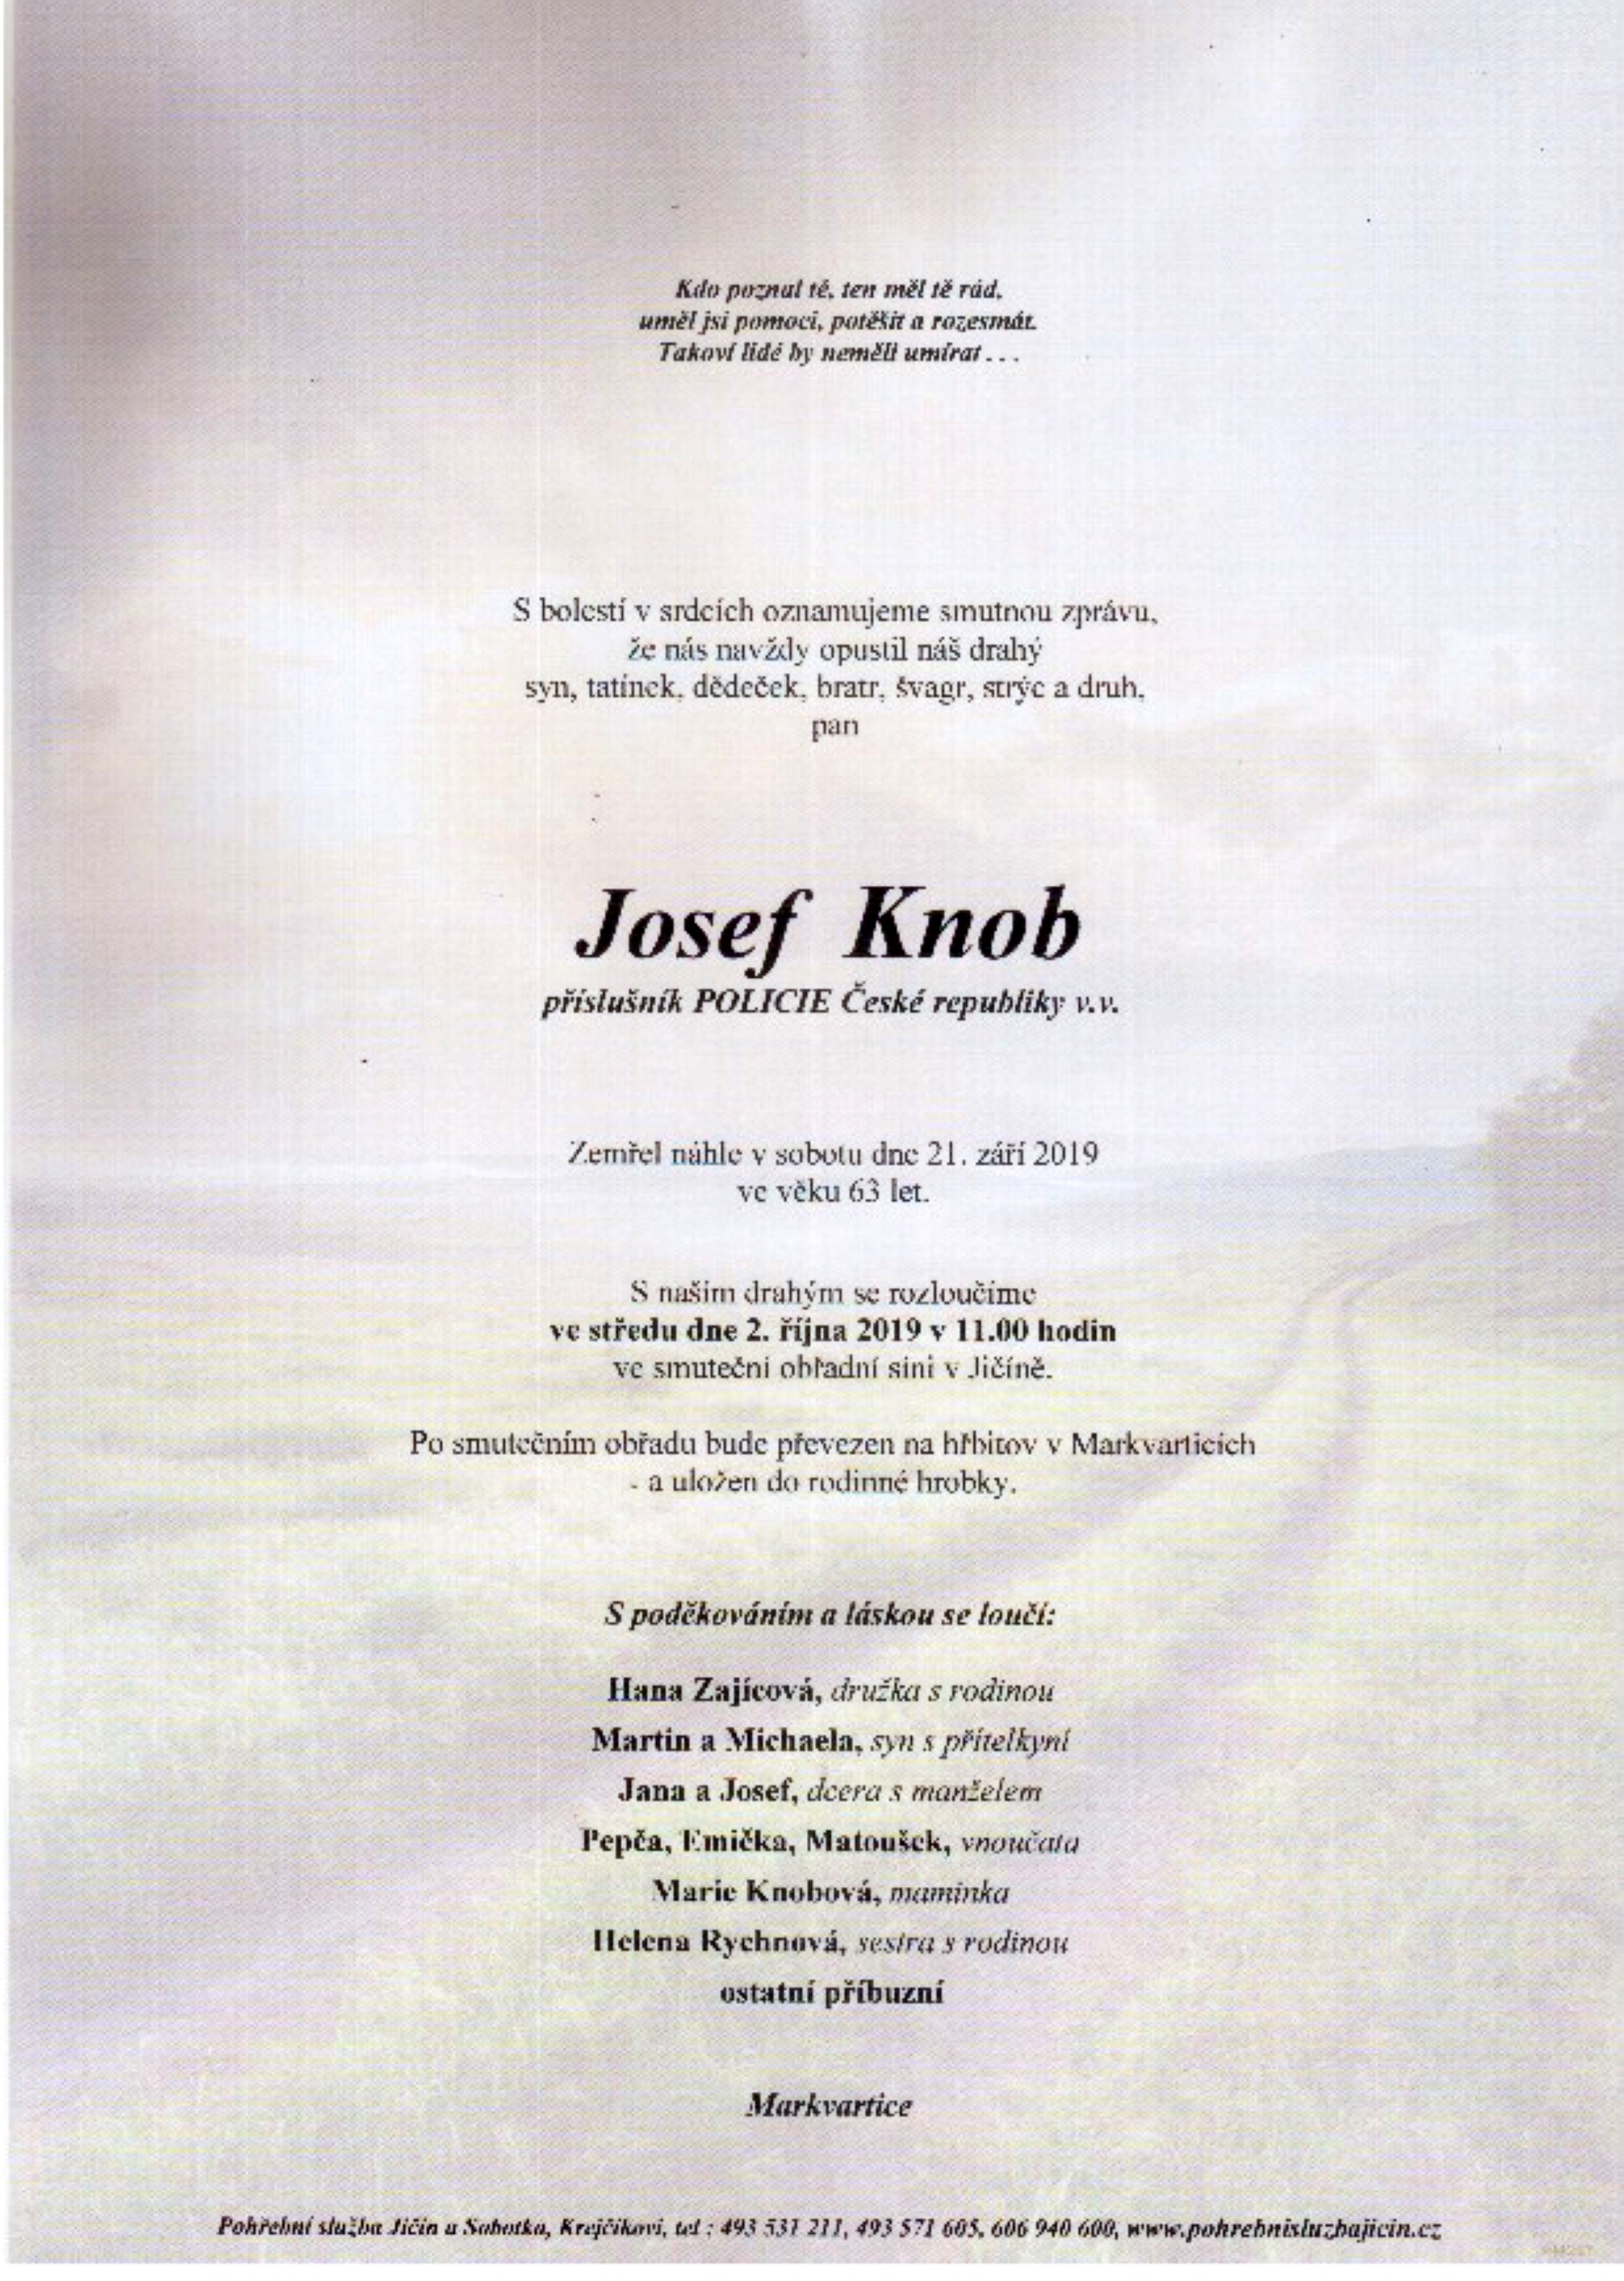 Josef Knob